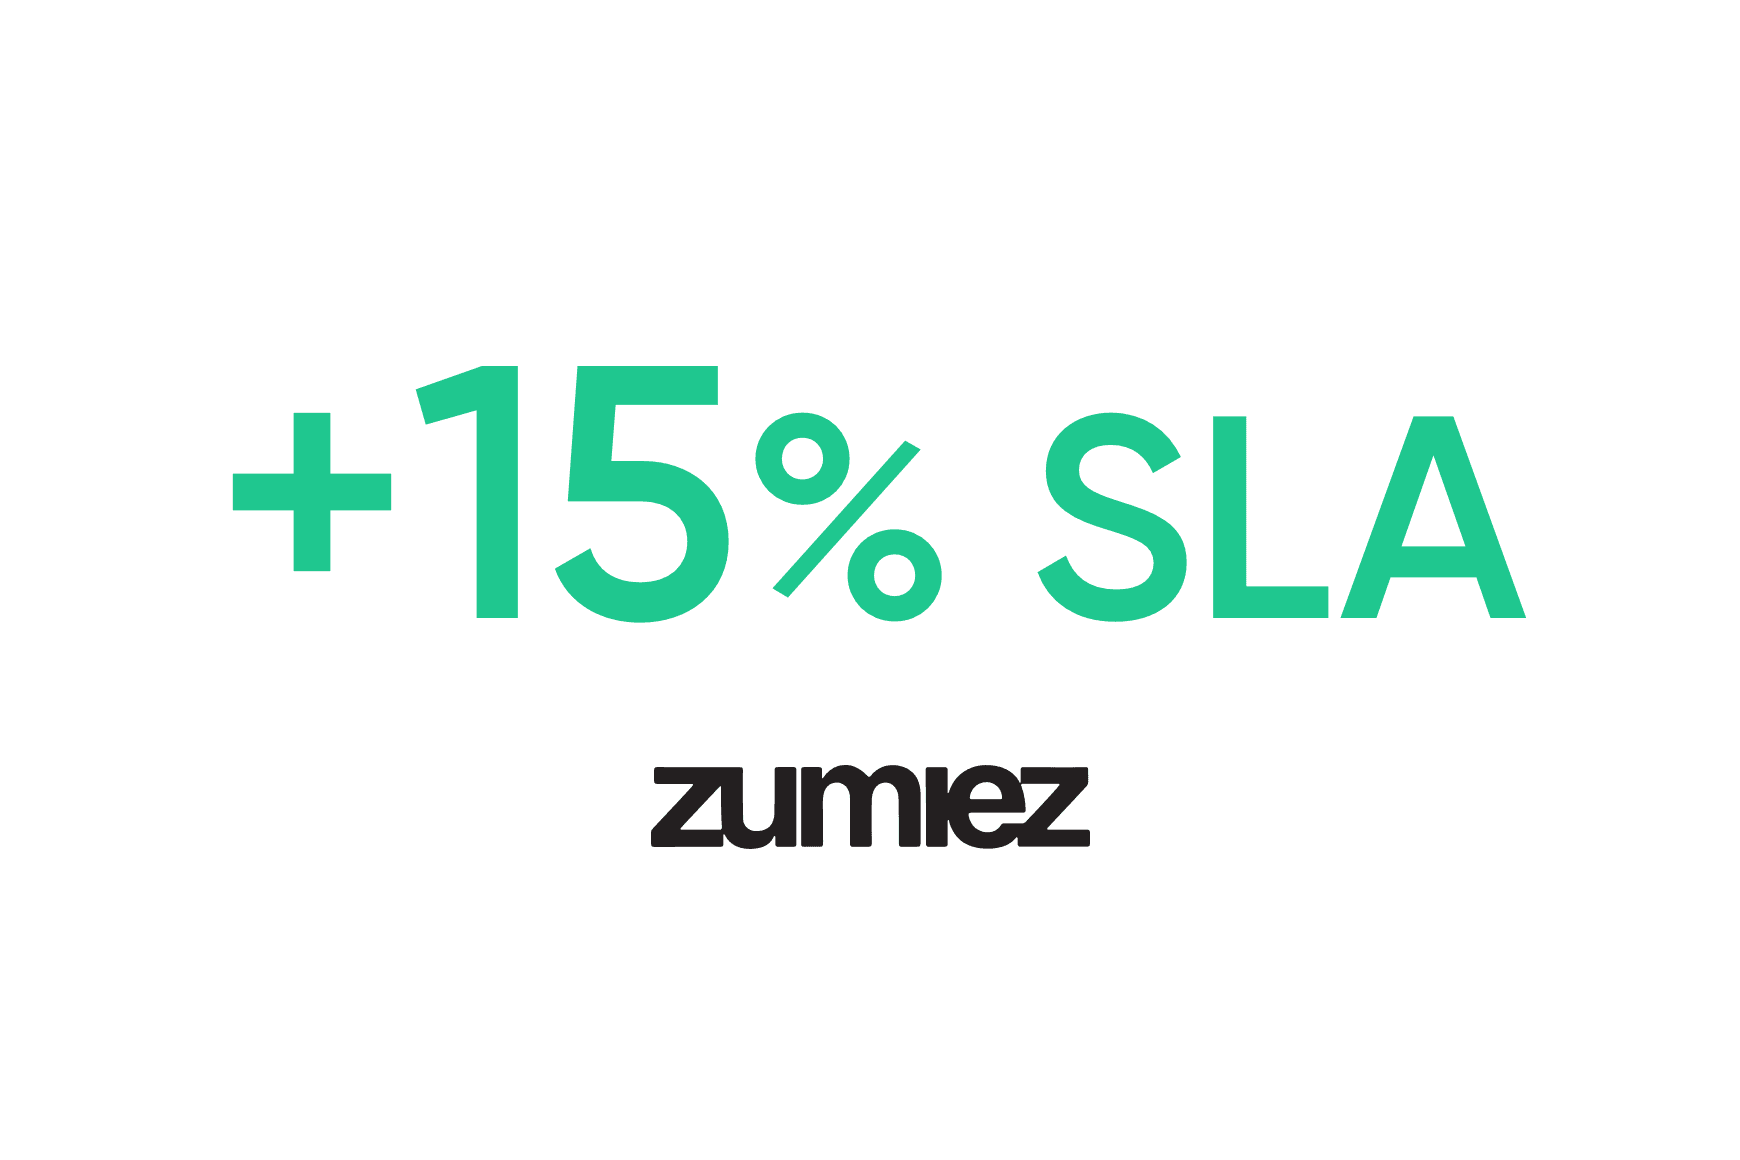 Zumiez: 15% improvement of SLAs